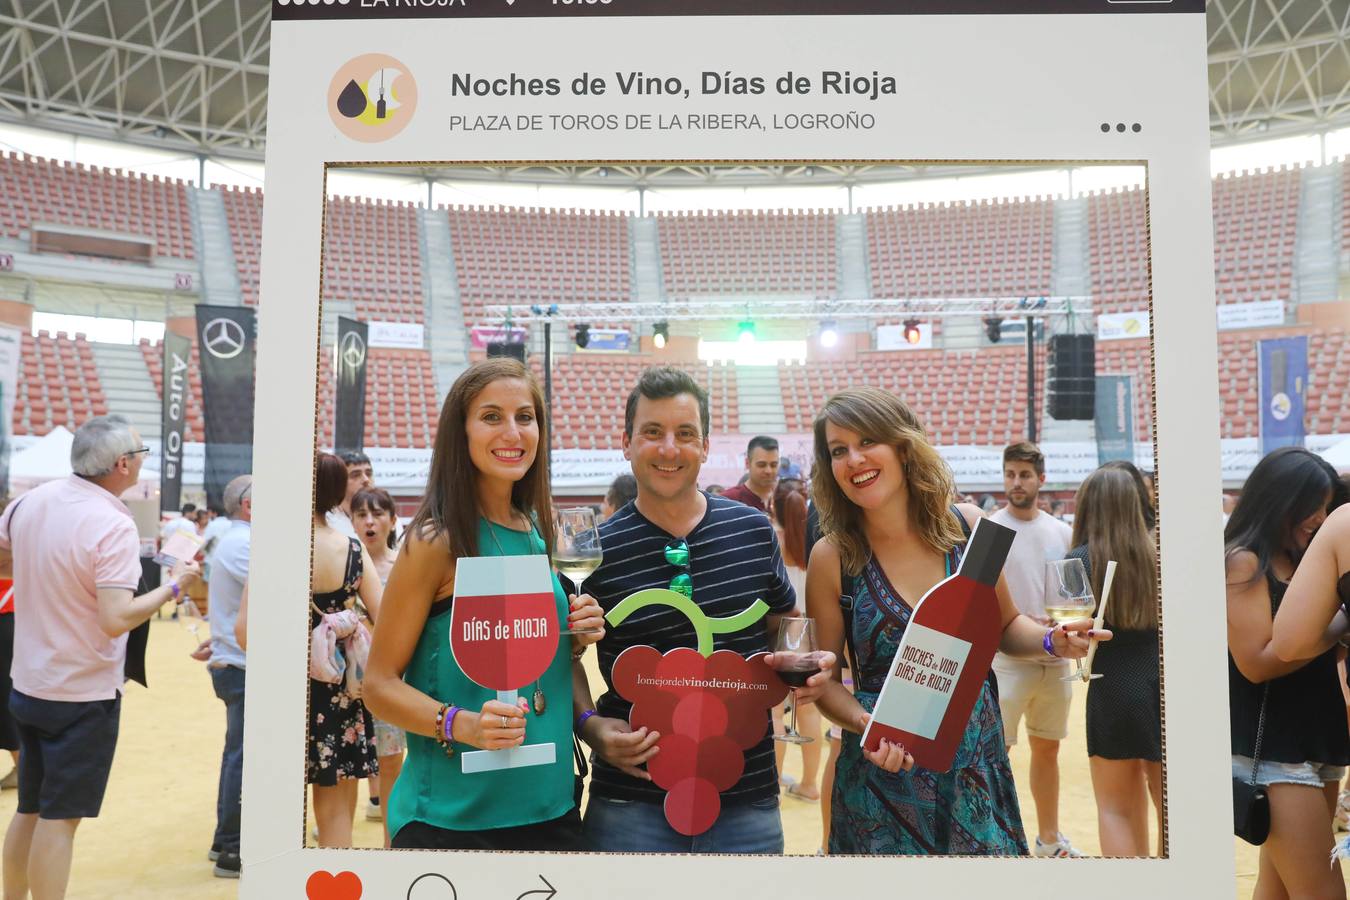 Fotos: Noches de Vino, Días de Rioja